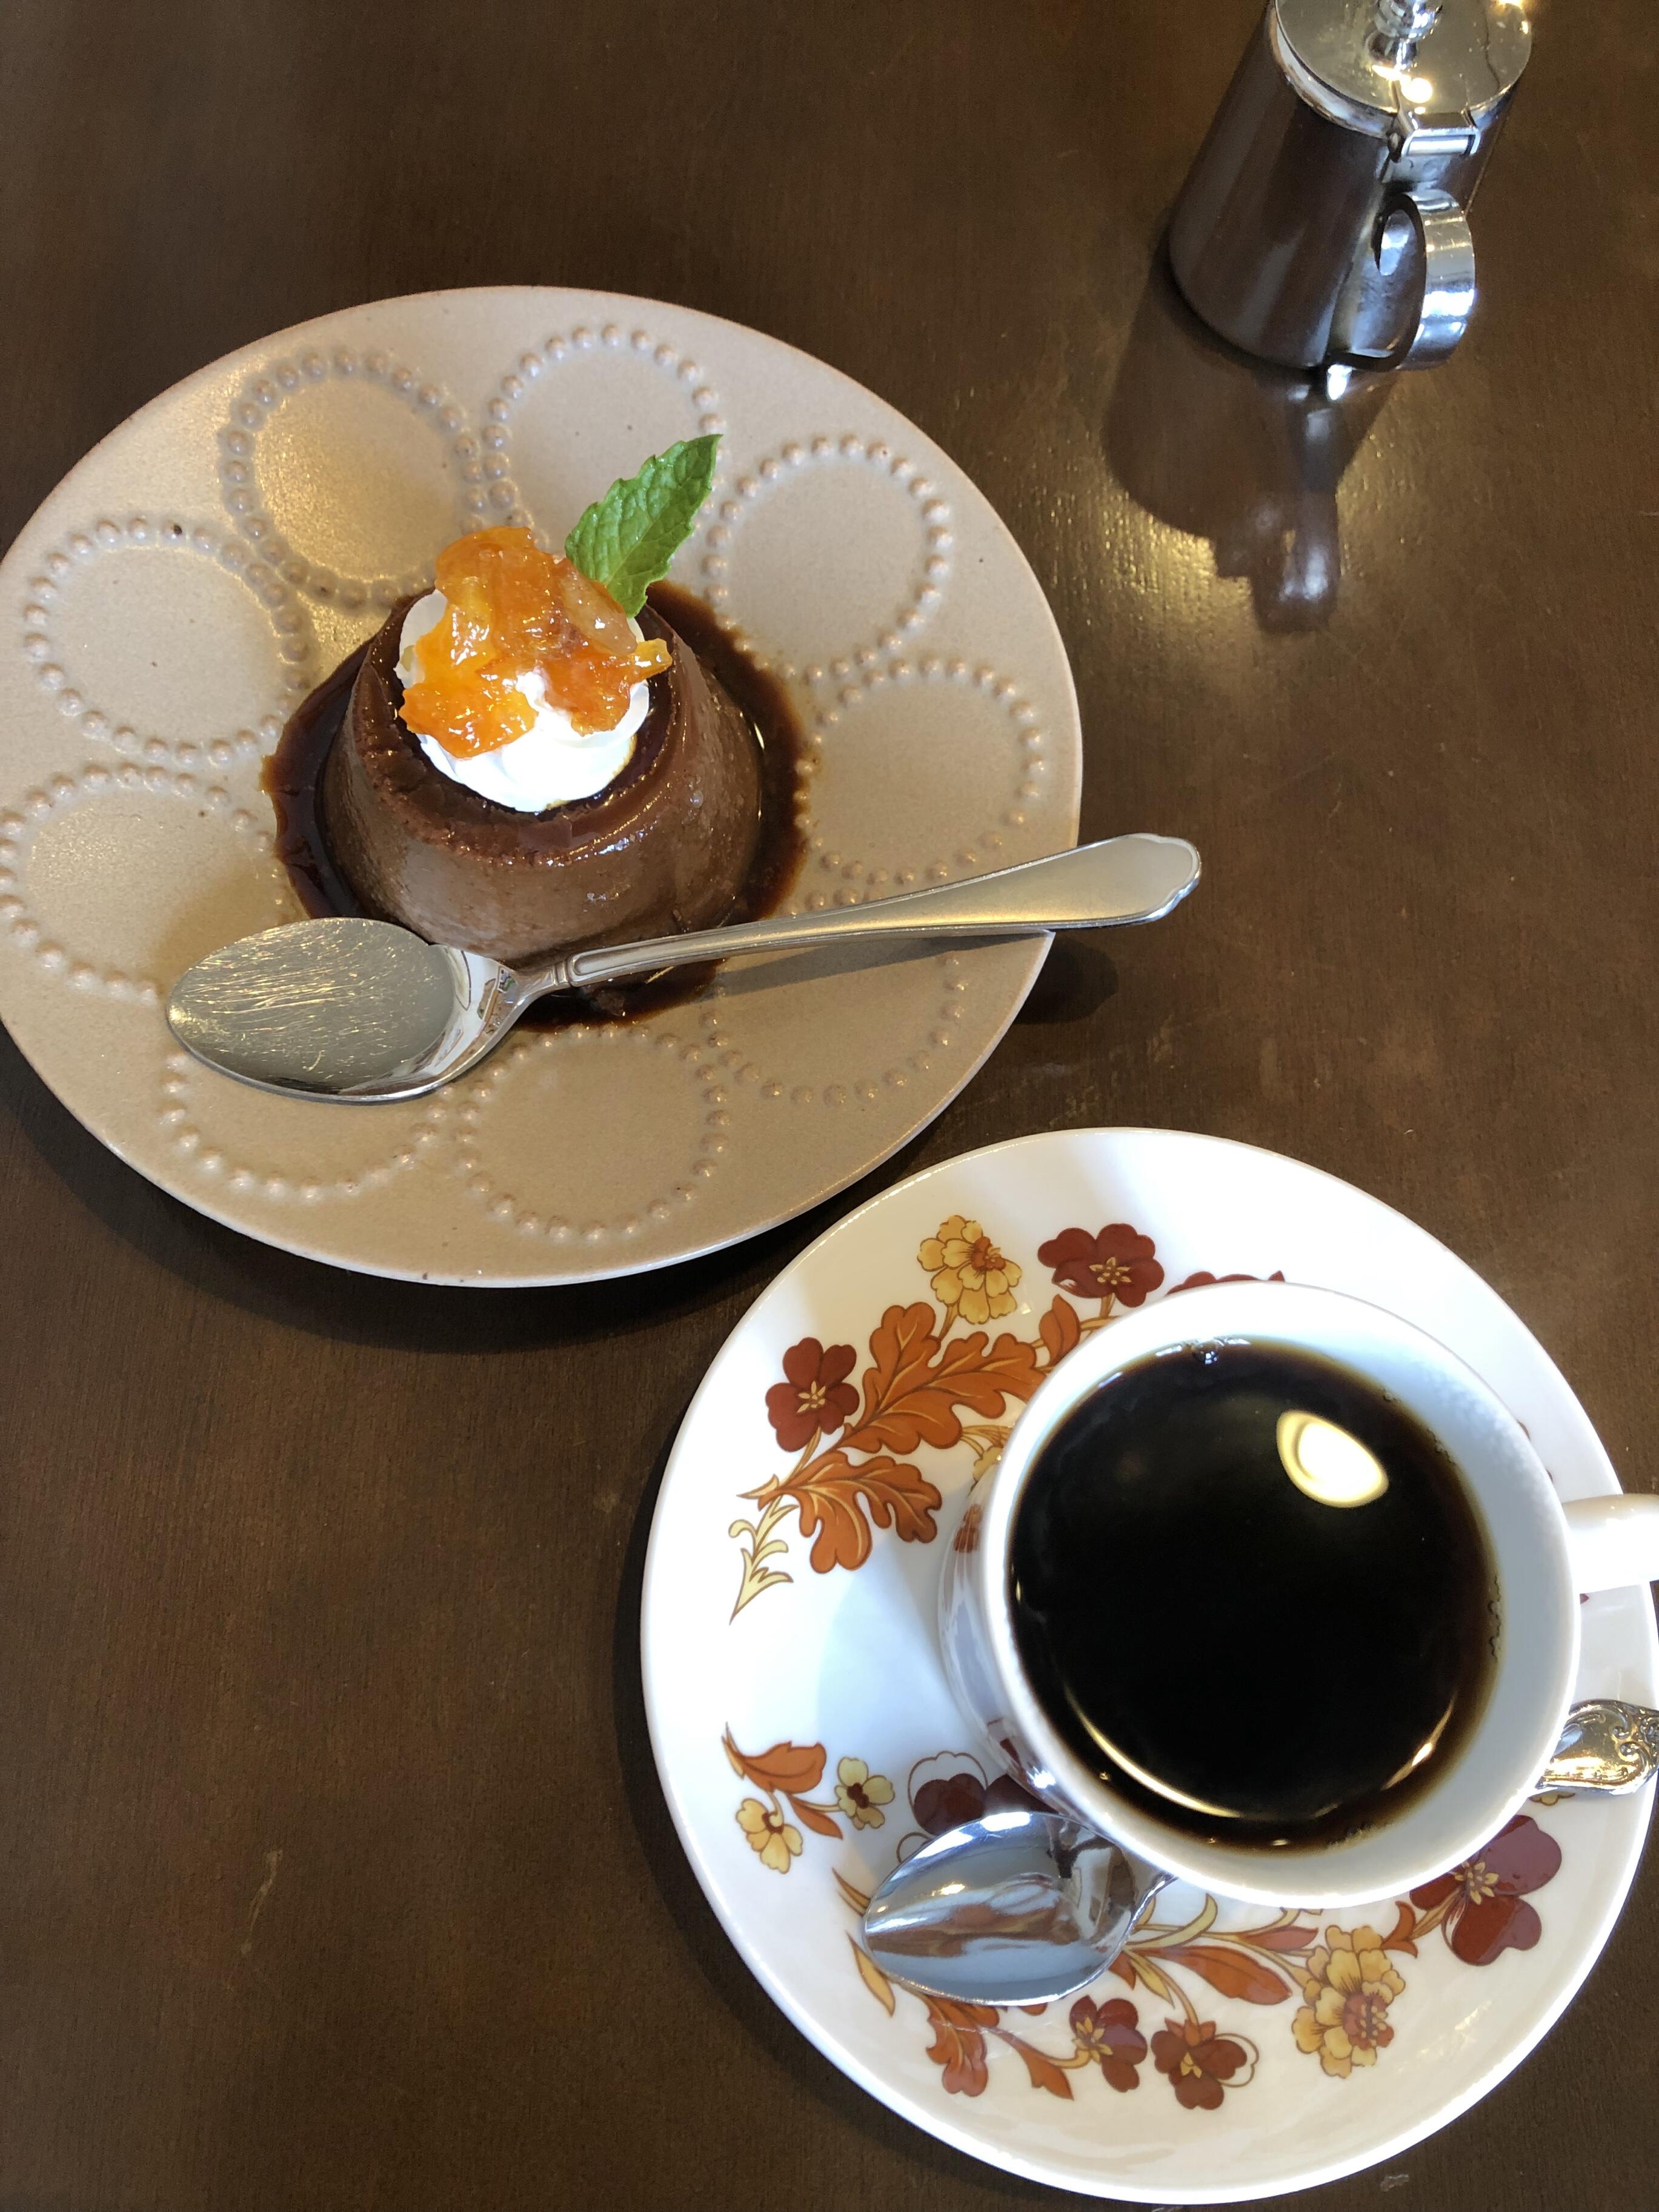 ヤマヨシ コーヒー - 函館市元町/カフェ・喫茶 | Yahoo!マップ